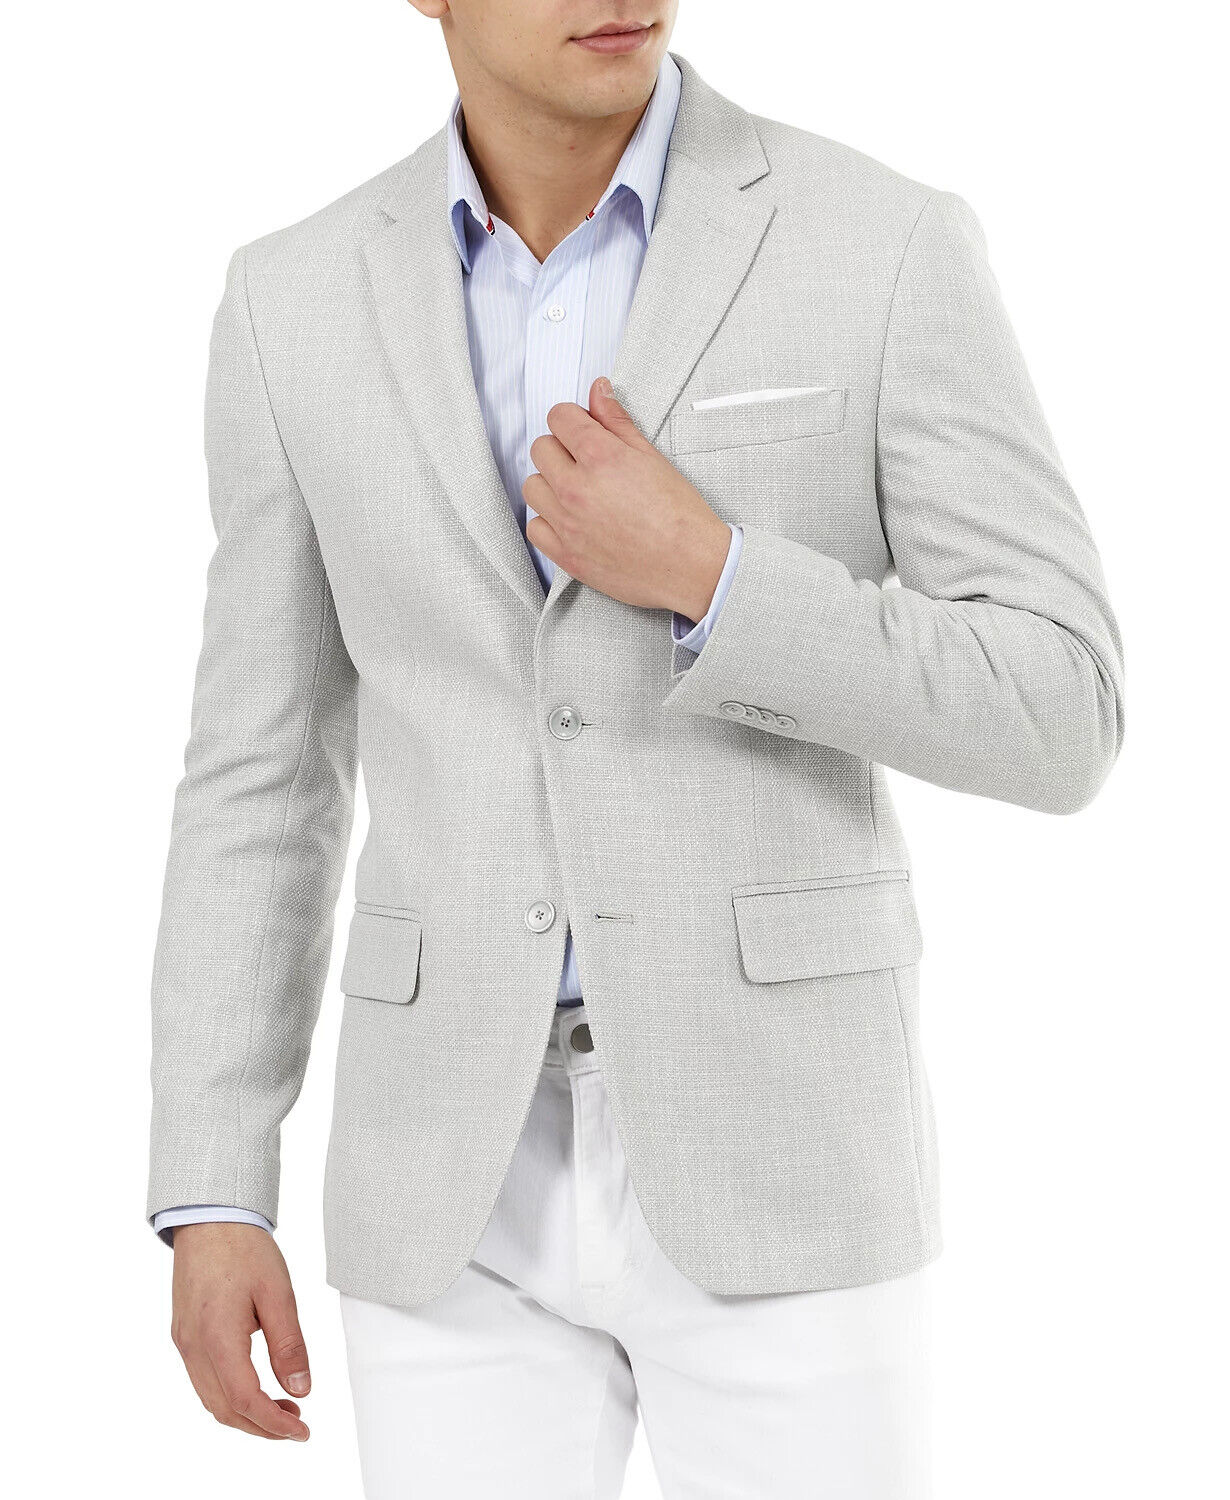 Tommy Hilfiger Men's Slim-Fit Solid Weave Blazer Light Gray 46L Sport Coat